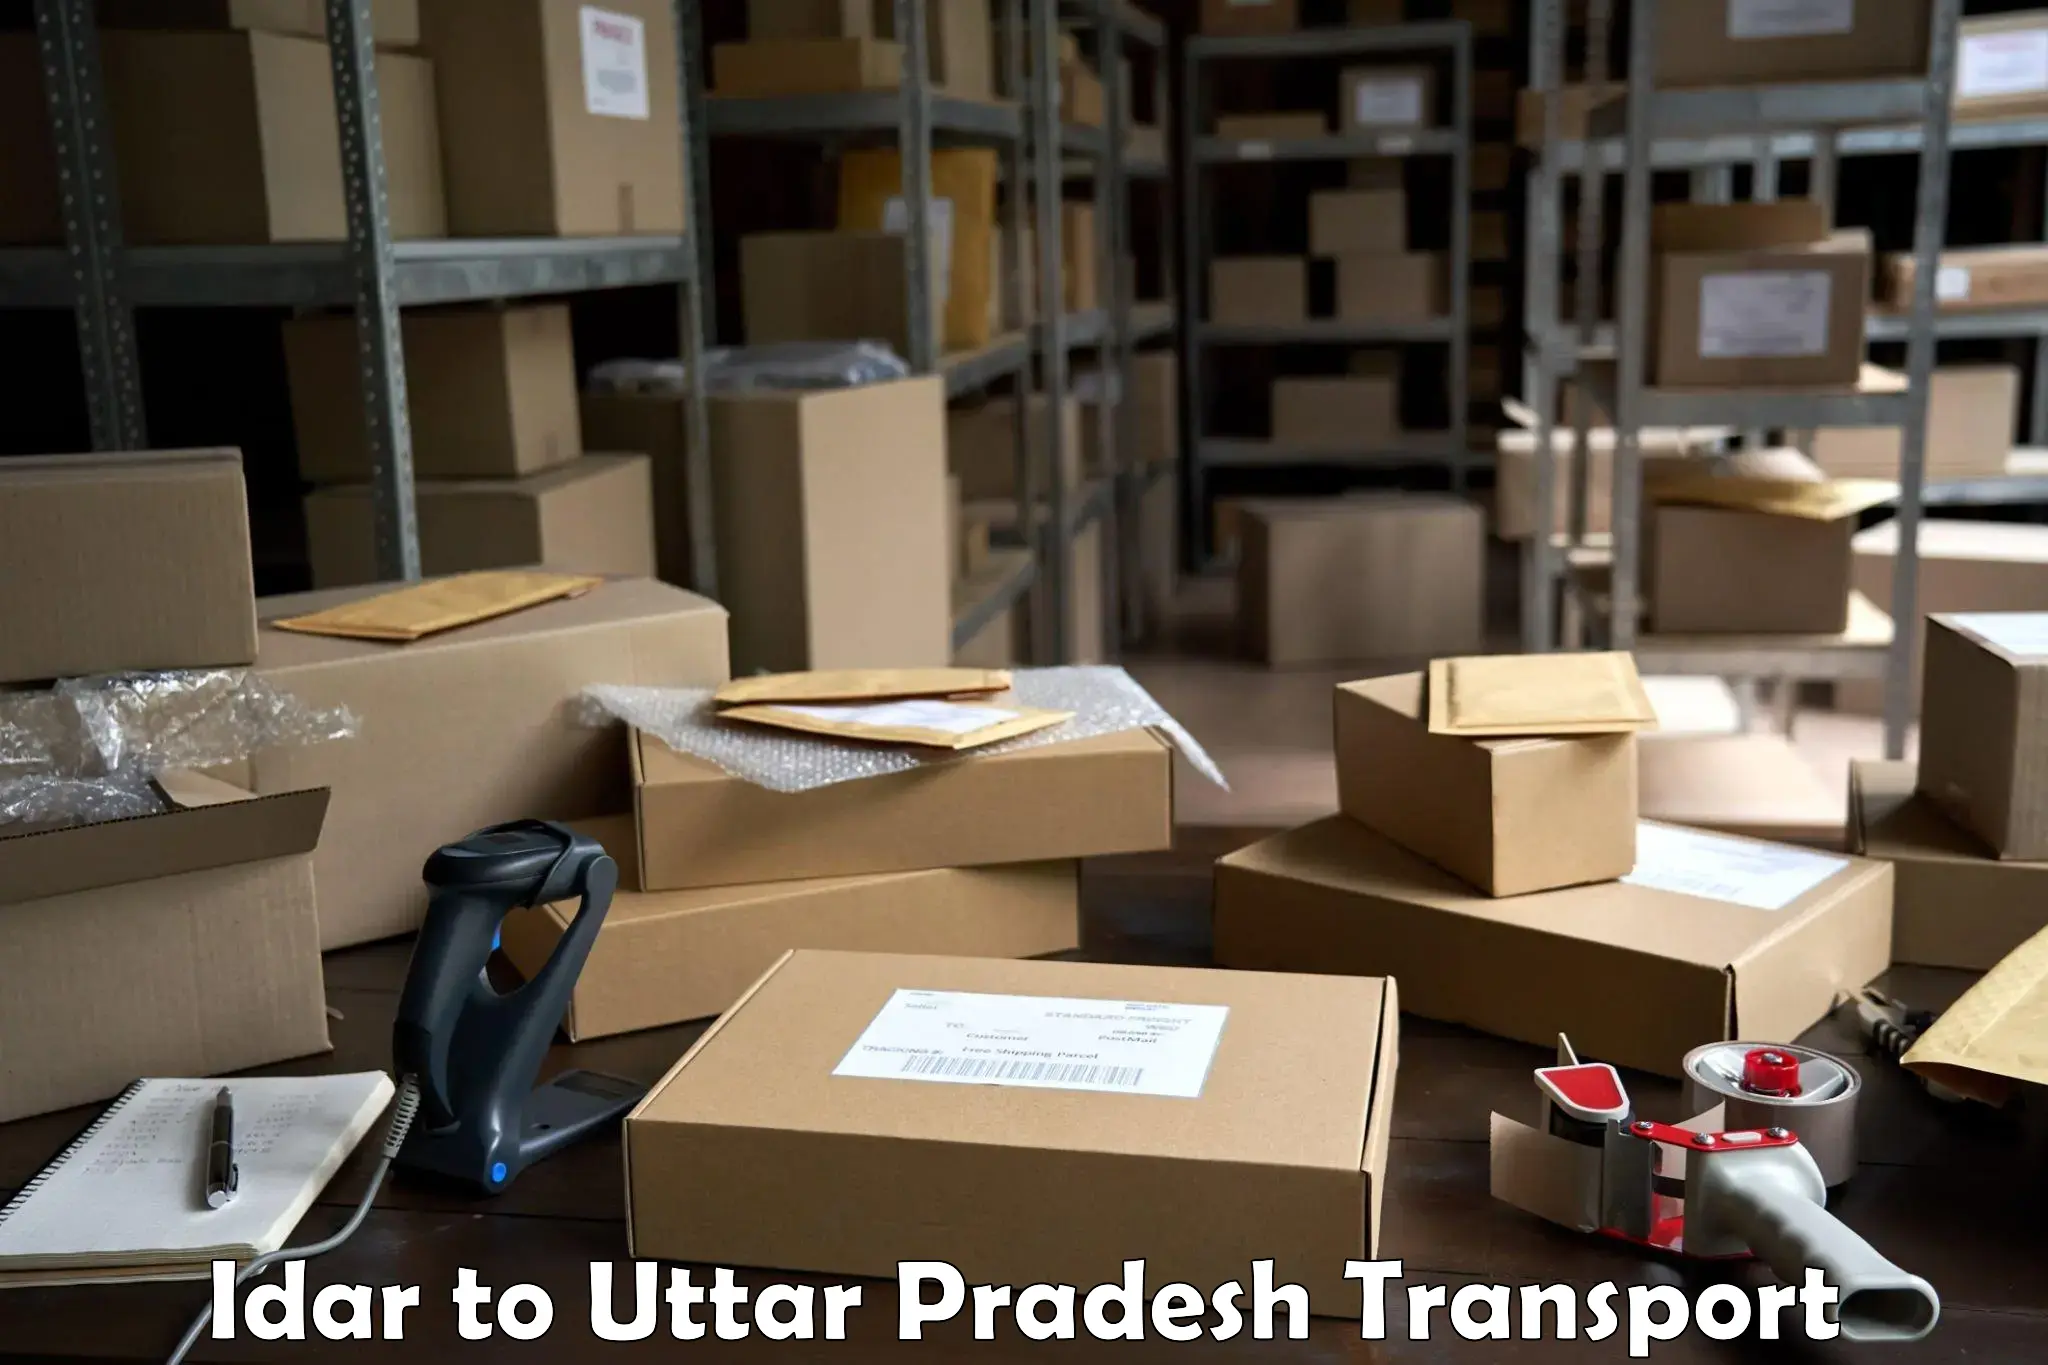 Parcel transport services Idar to Uttar Pradesh